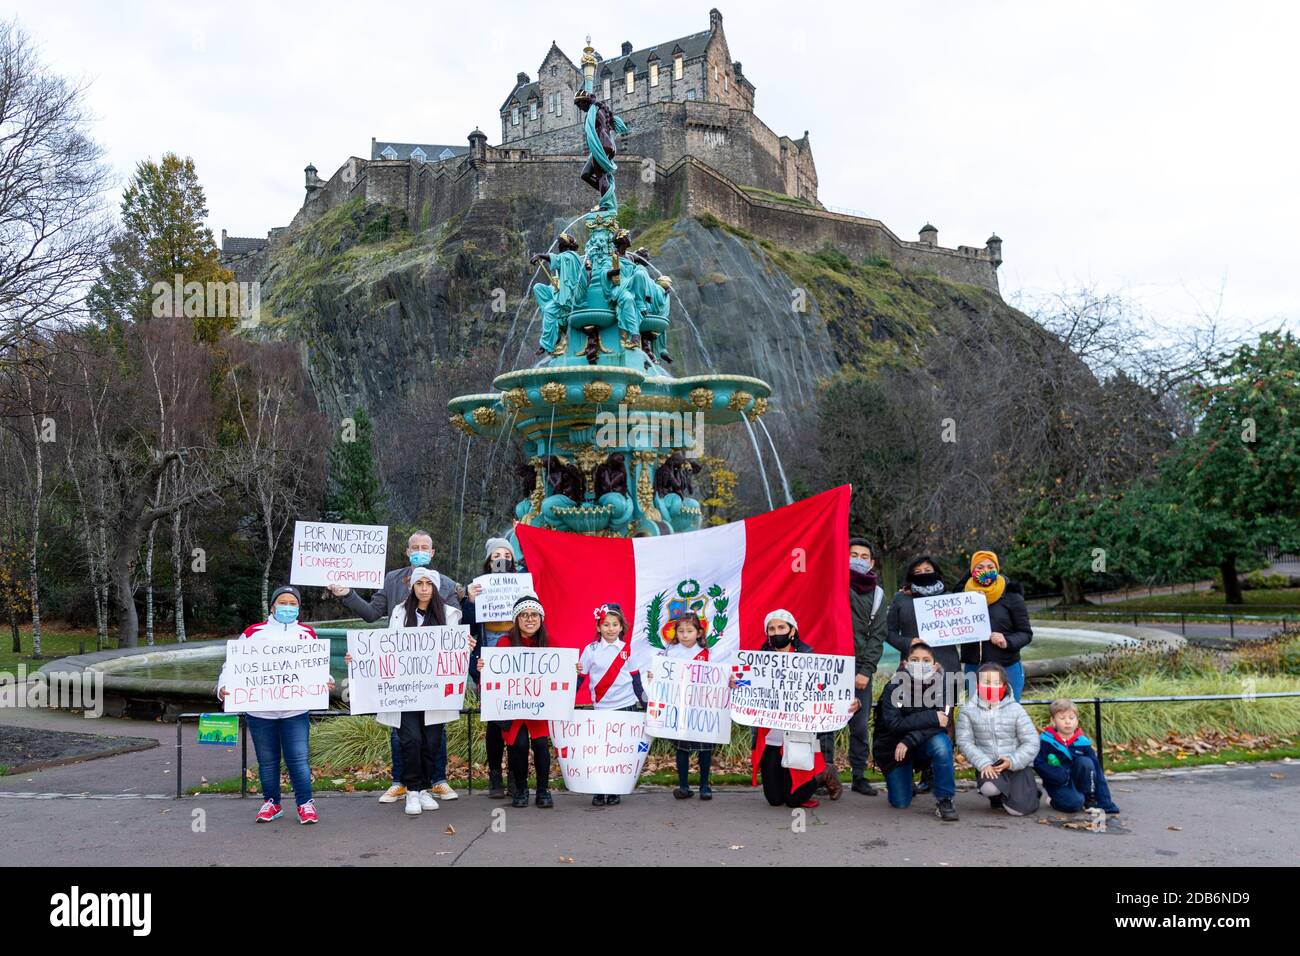 Peruanische Einwohner in Edinburgh veranstalteten wegen COVID19-Beschränkungen im Zentrum von Edinburgh einen kleinen Protest zur Unterstützung von Protesten für Demokratie und Korruptionsbekämpfung in Peru. Stockfoto